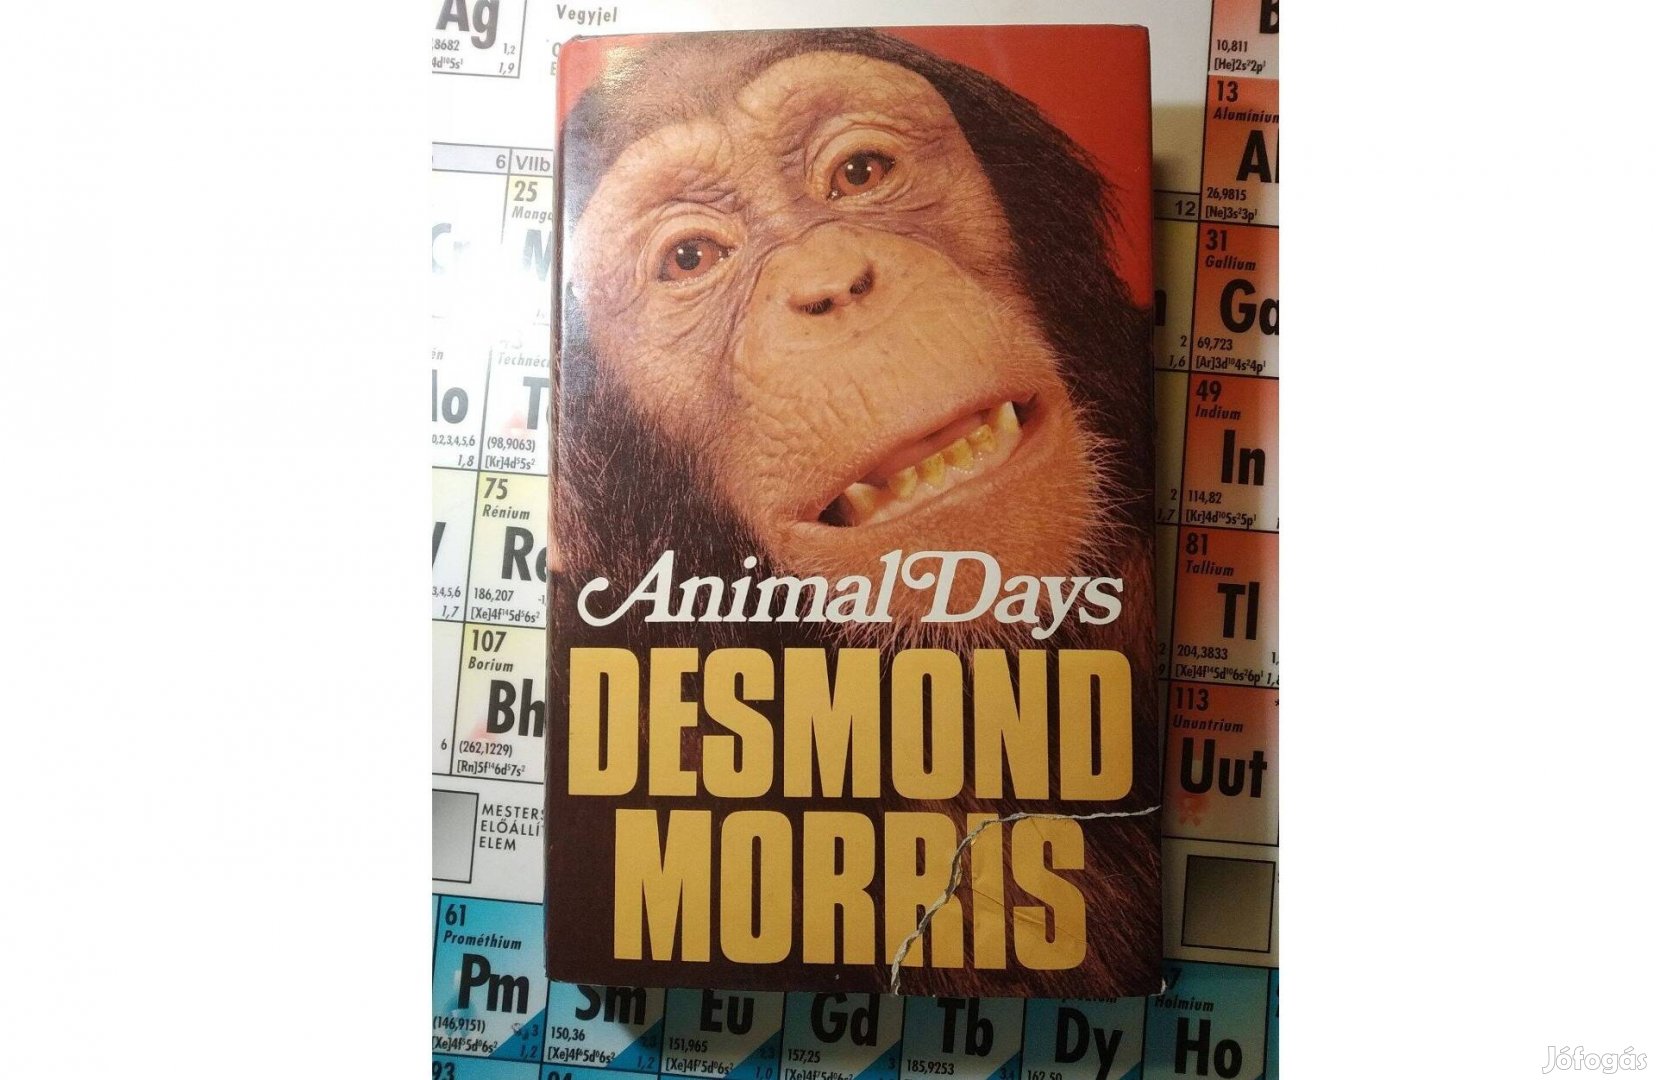 Animal days Desmond Morris